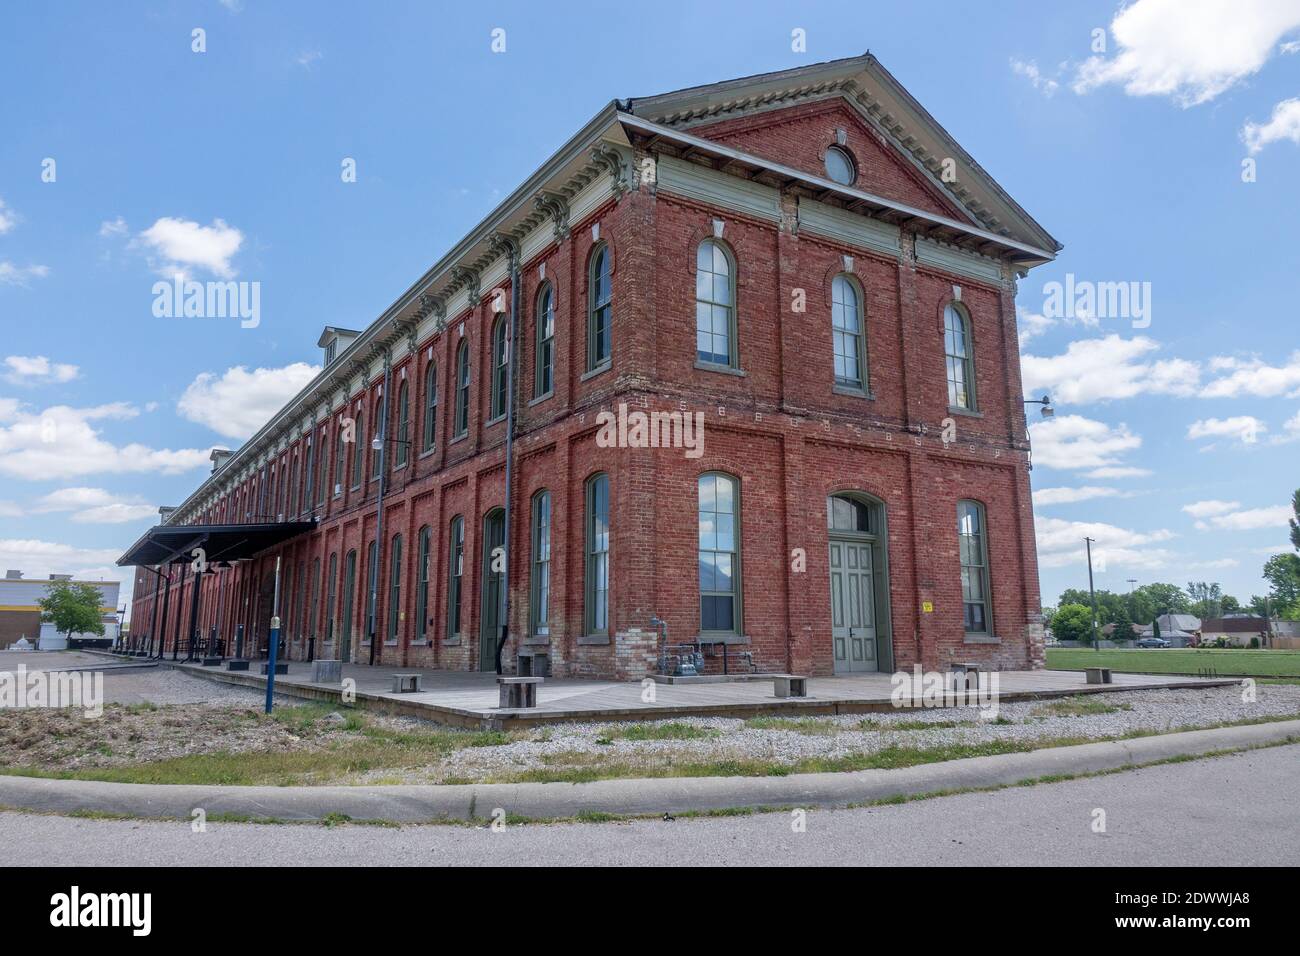 Ein ehemaliger Bahnhof der Canada Southern Railway Station St. Thomas Ontario Kanada erbaut im Jahr 1873 diente als Station zwischen Detroit nach Buffalo The Railway Stockfoto